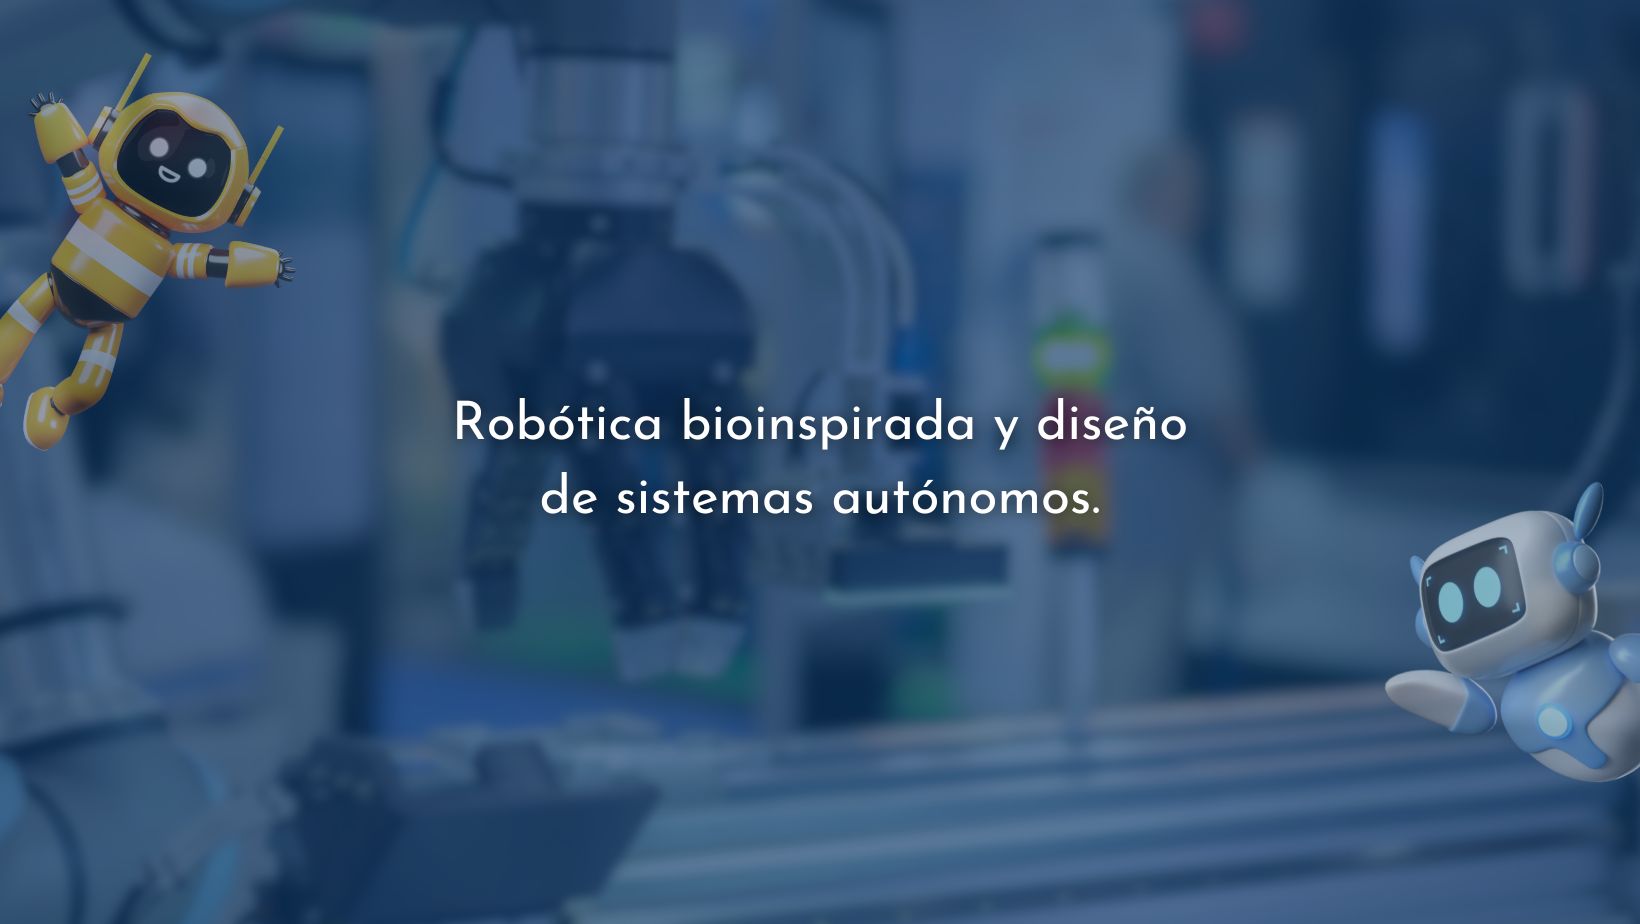 Robótica bioinspirada y diseño de sistemas autónomos.